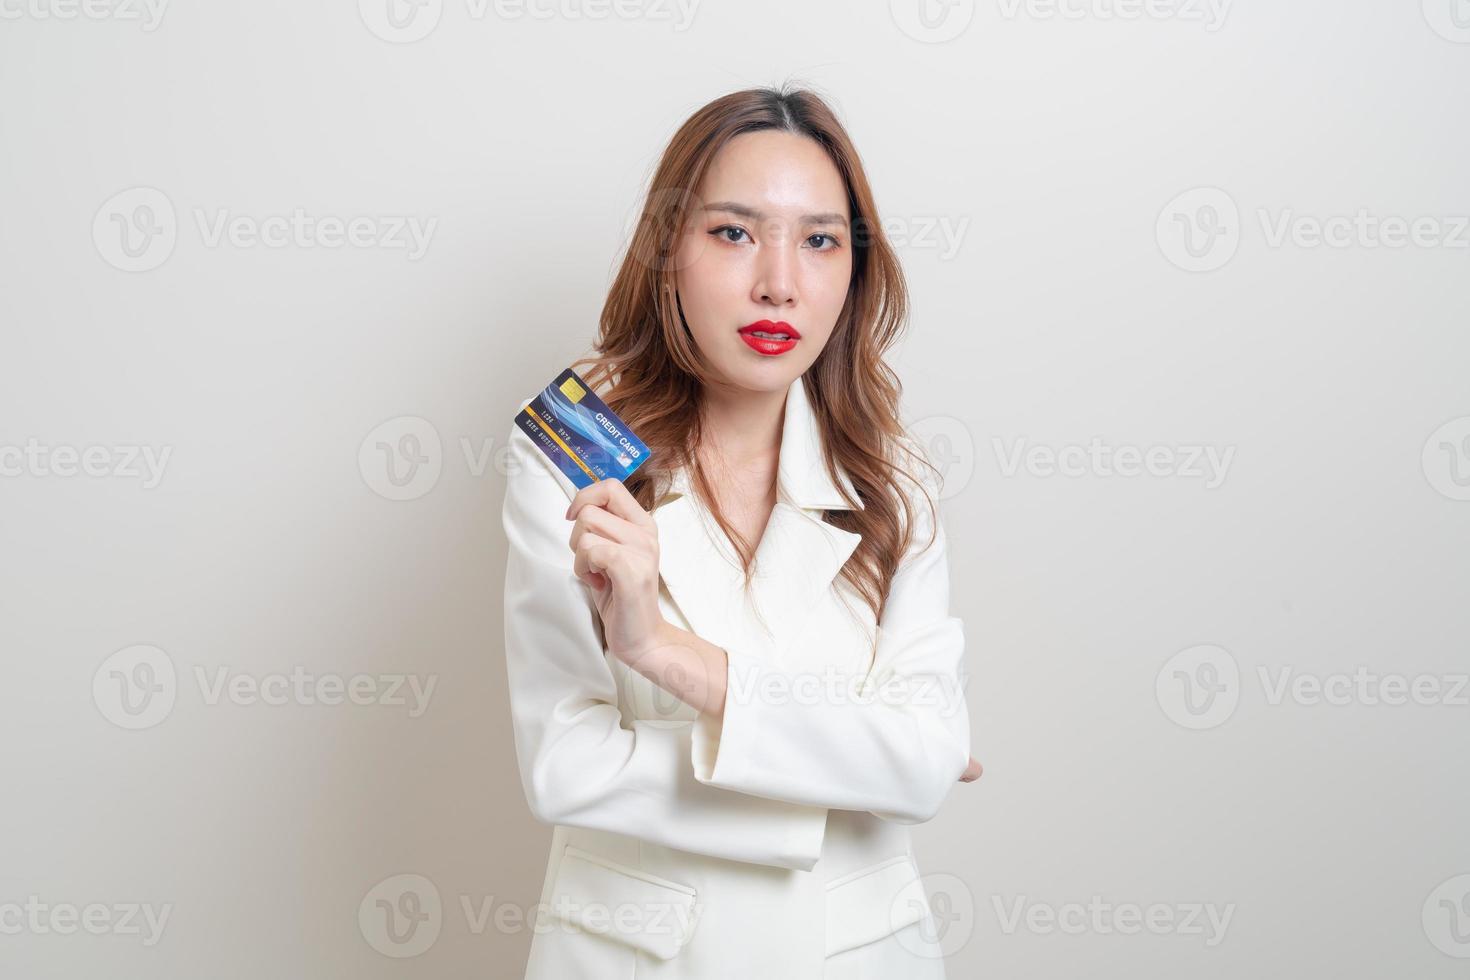 retrato linda mulher asiática segurando um cartão de crédito foto